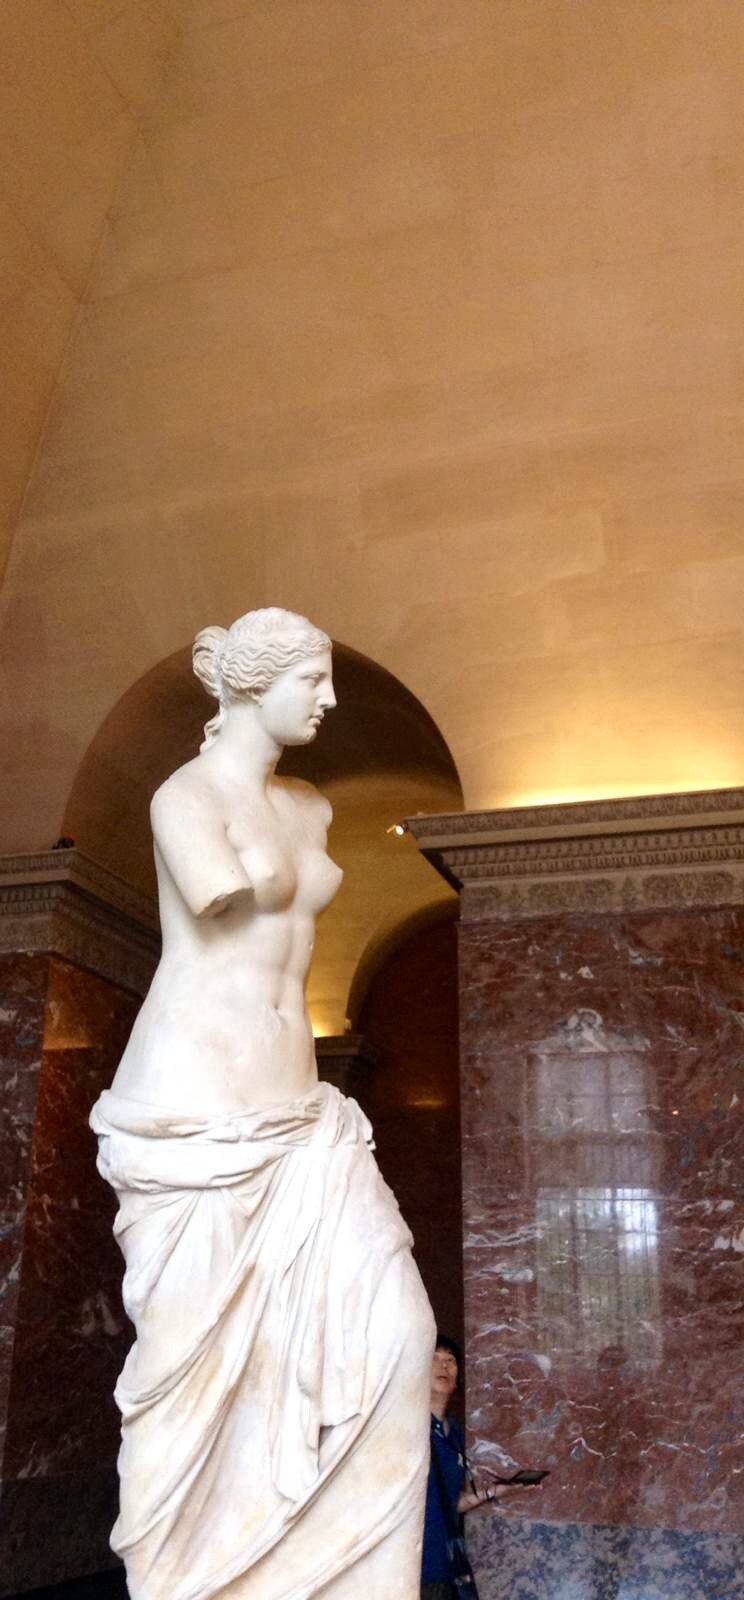 维纳斯雕像的美感所在图片